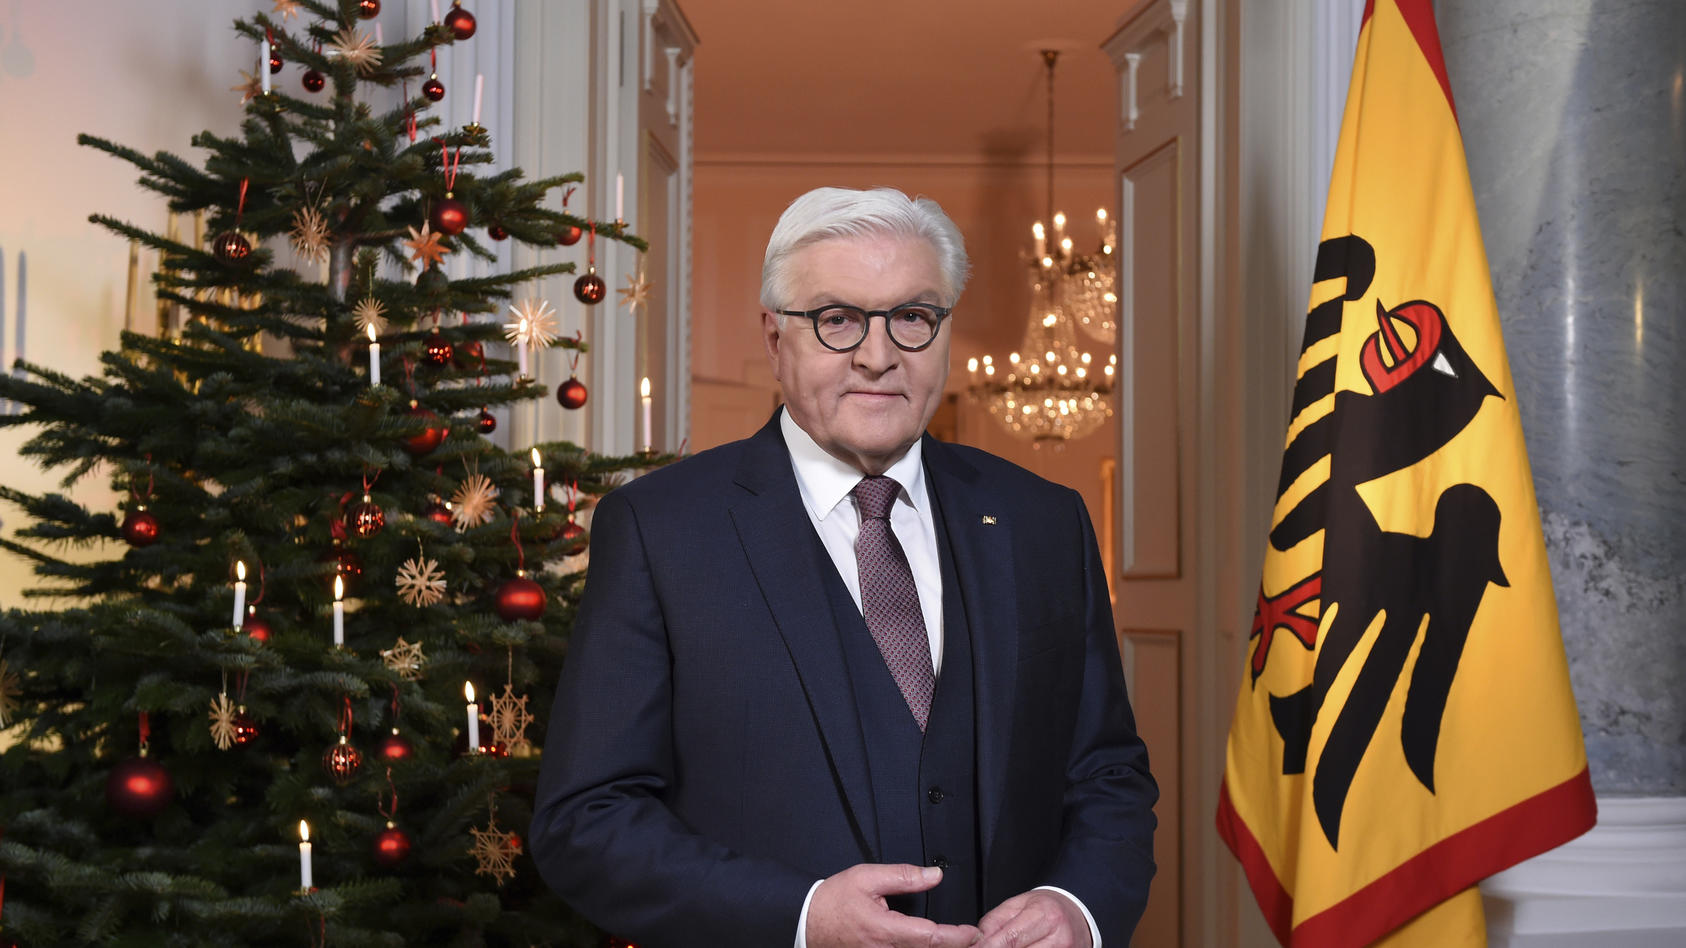 Frank-Walter Steinmeiers Weihnachtsansprache Aufruf zu mehr demokratischen Streits